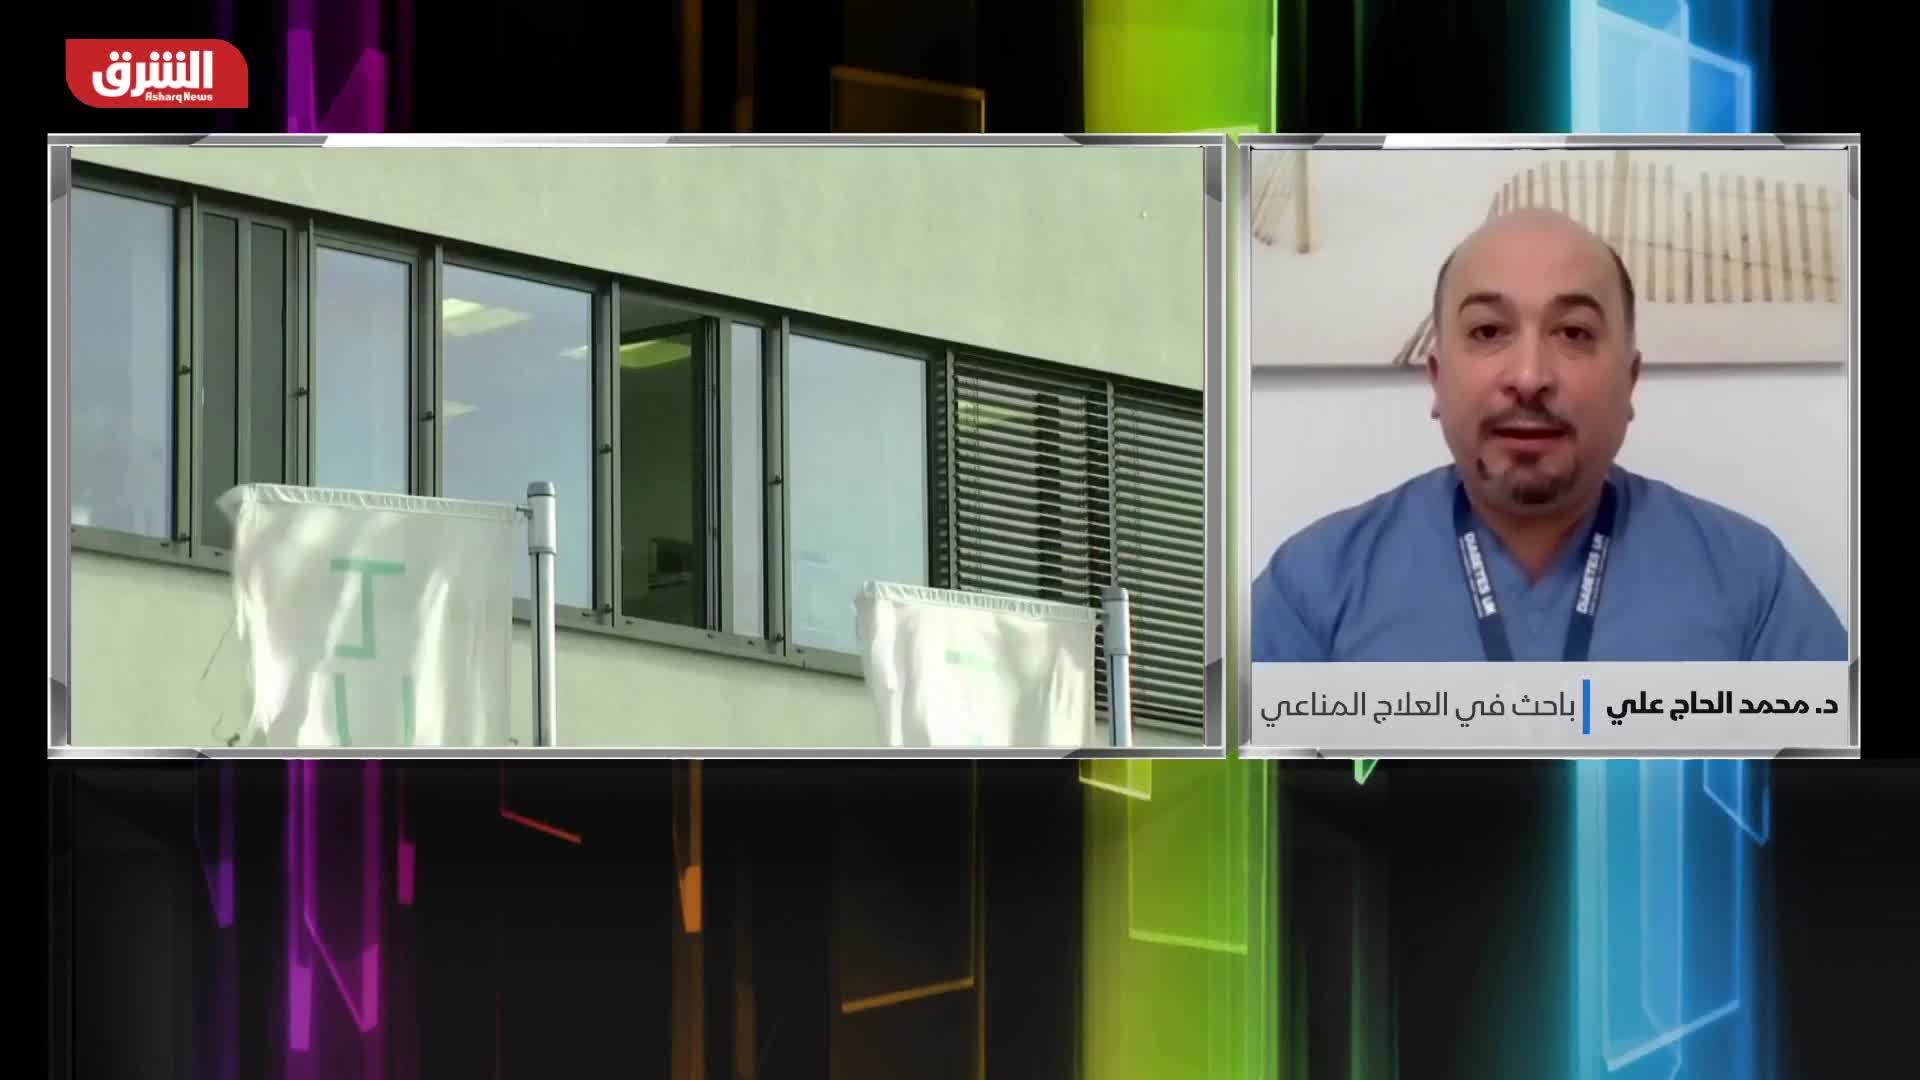 د. محمد الحاج علي: التحول من الجائحة إلى الوباء المستوطن بات قريباً جداً